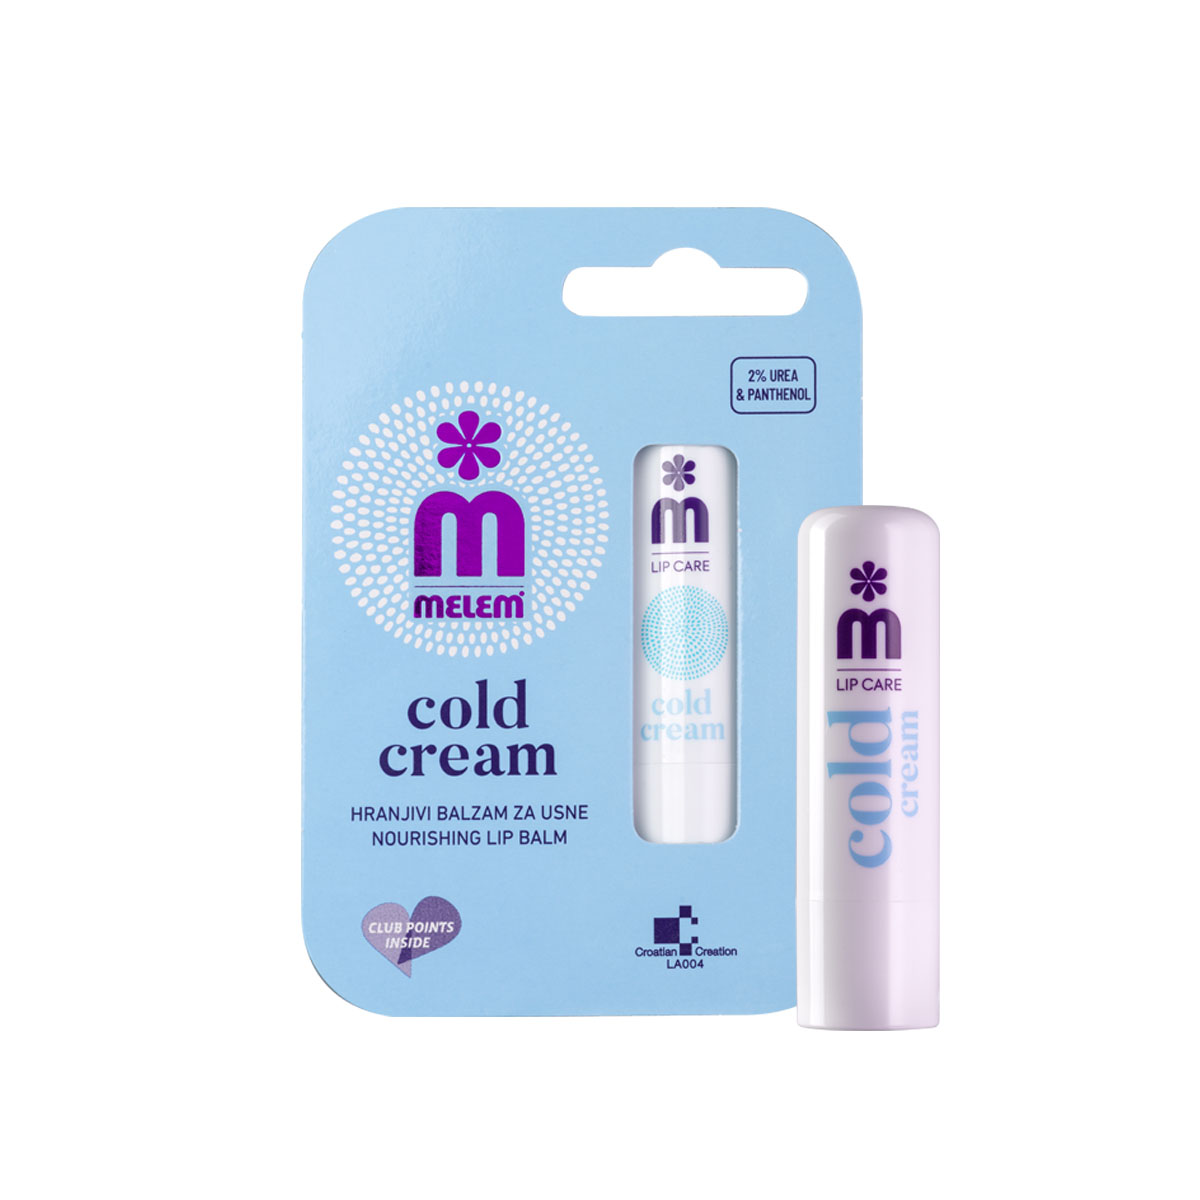 Melem Cold Cream hranjivi balzam za usne 4,5g